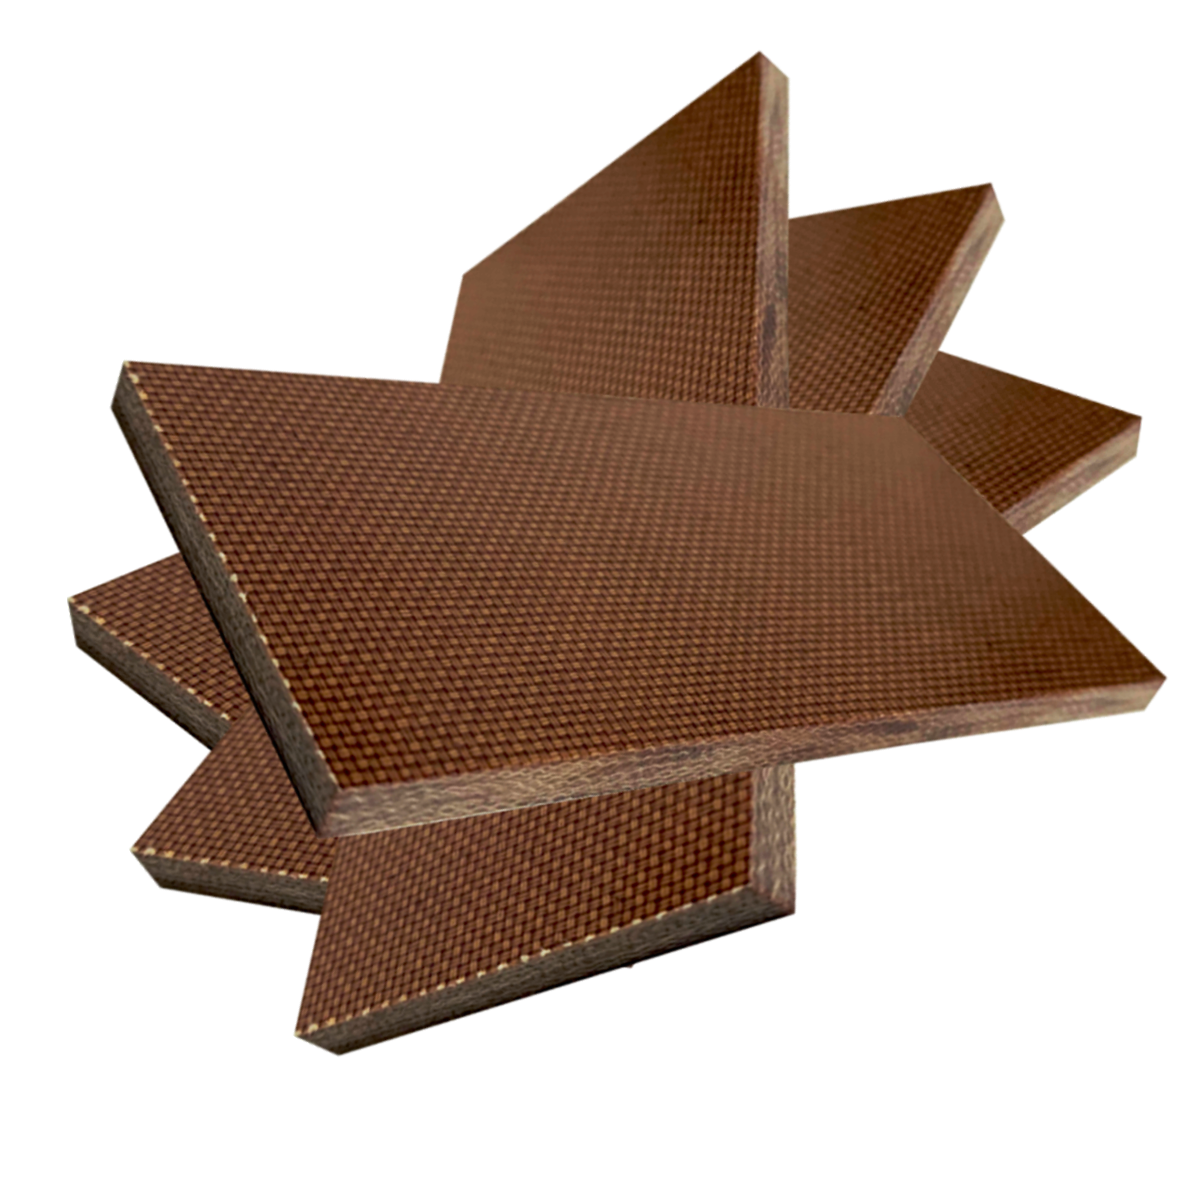 4 KUSY - Přířez z desky - Textit, Texgumoid  - 1 x 250 x 250 mm